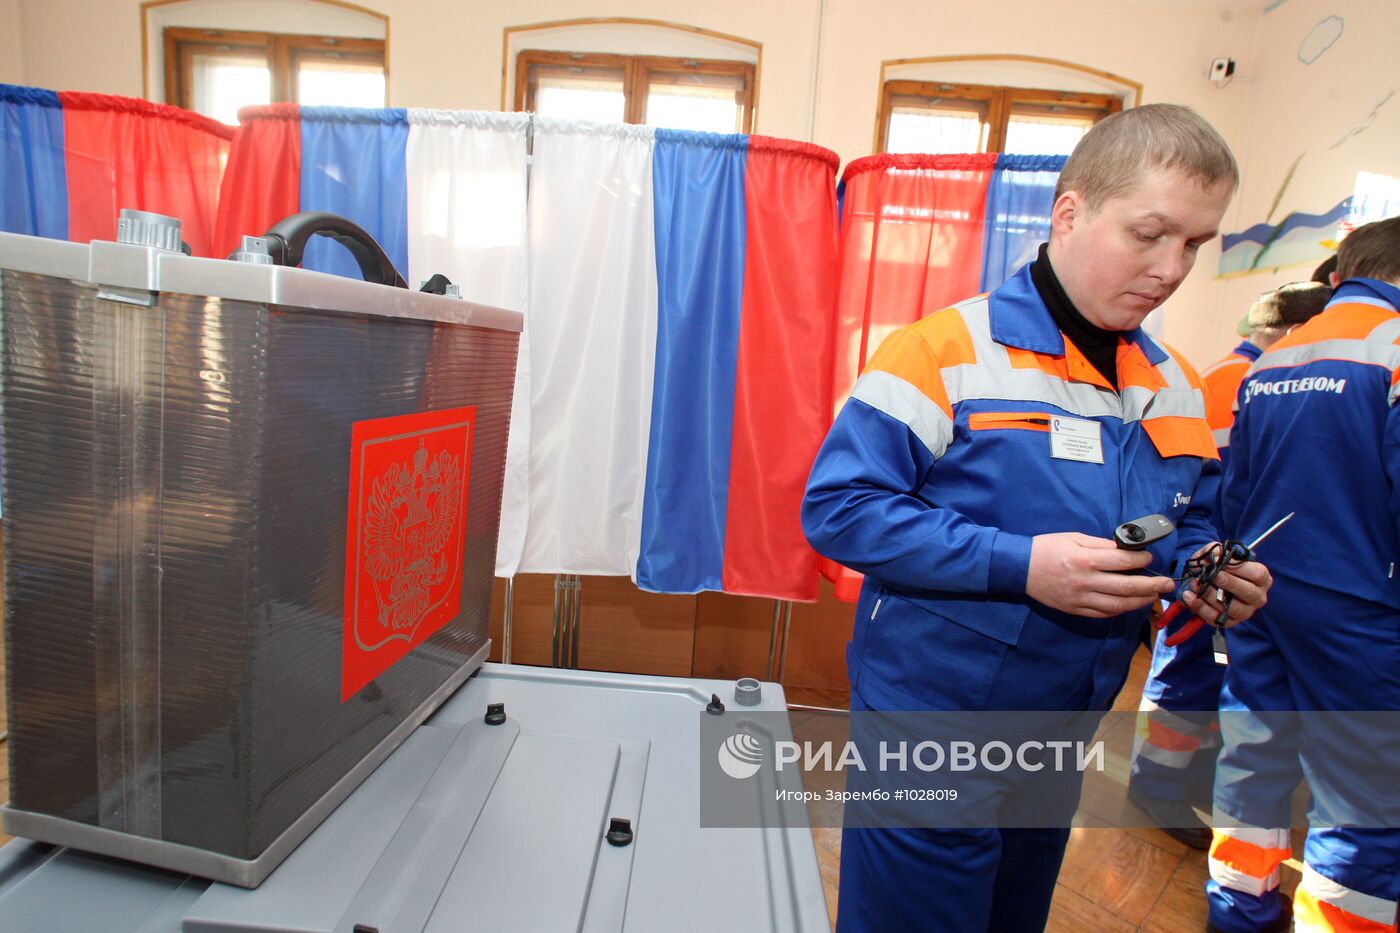 Установка веб-камер на избирательном участке города Балтийска